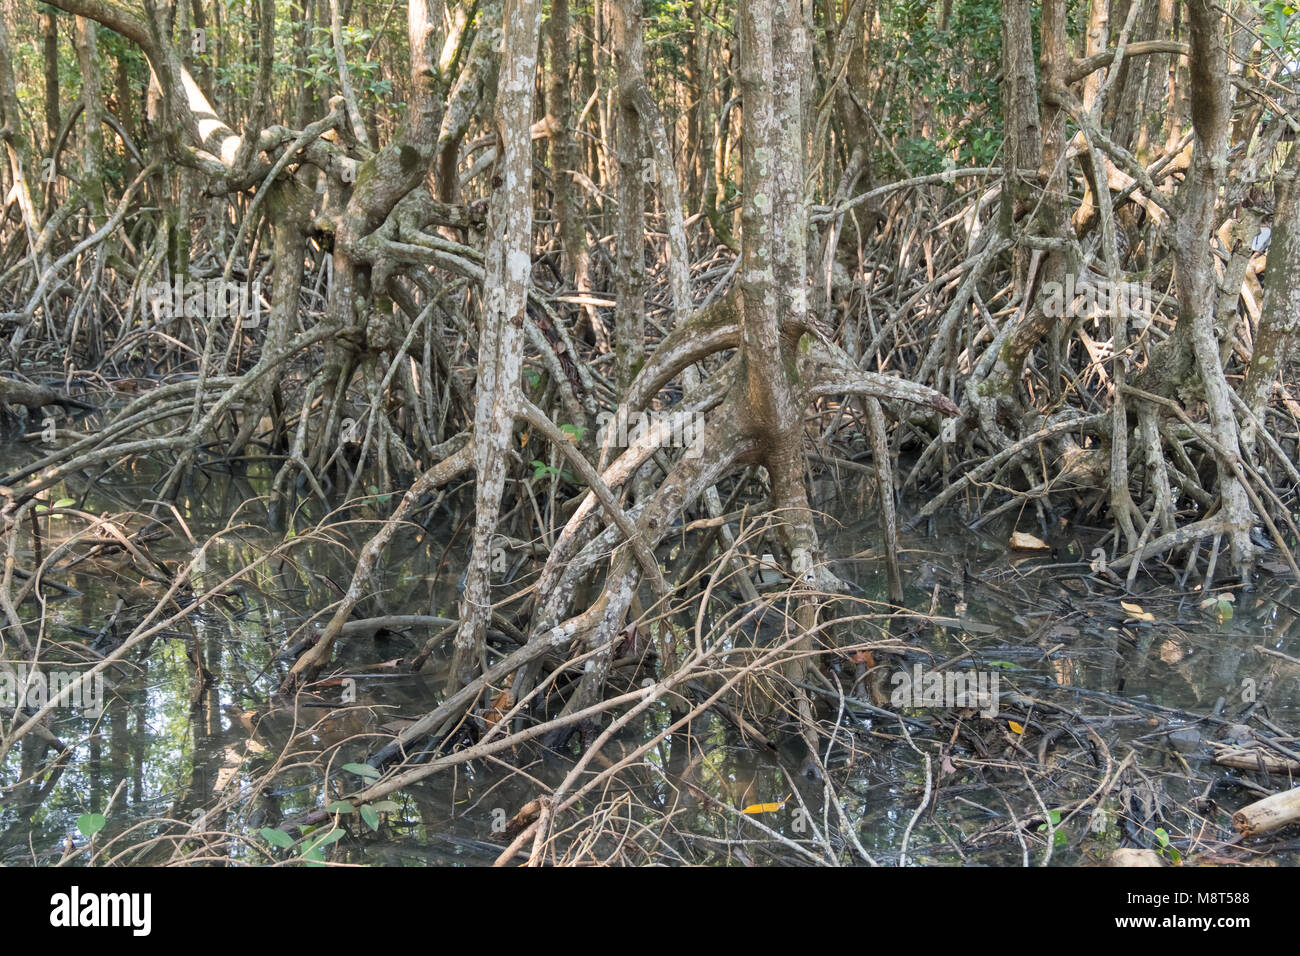 Mangroves le long du vert turquoise de l'eau dans le ruisseau. Vue sur la forêt de mangrove. Banque D'Images